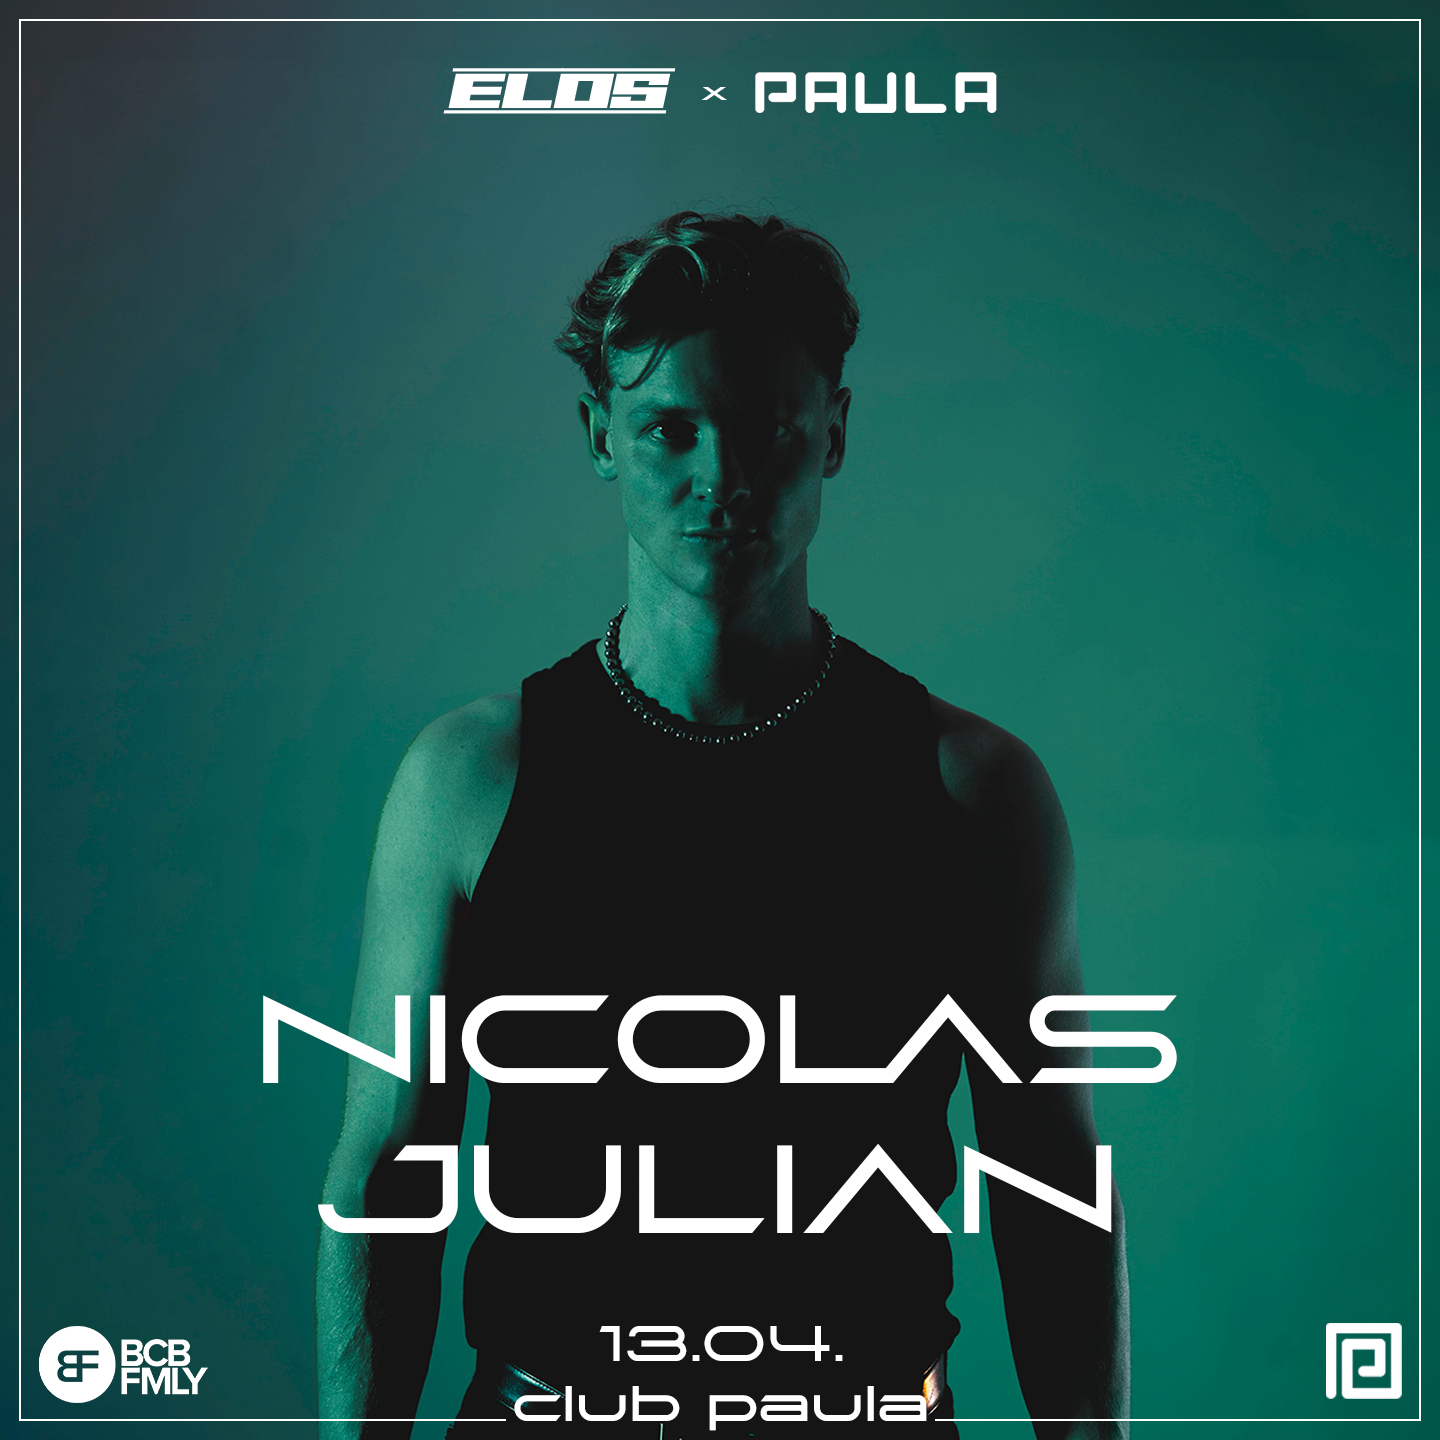 ELOS x PAULA with Nicolas Julian - Página frontal